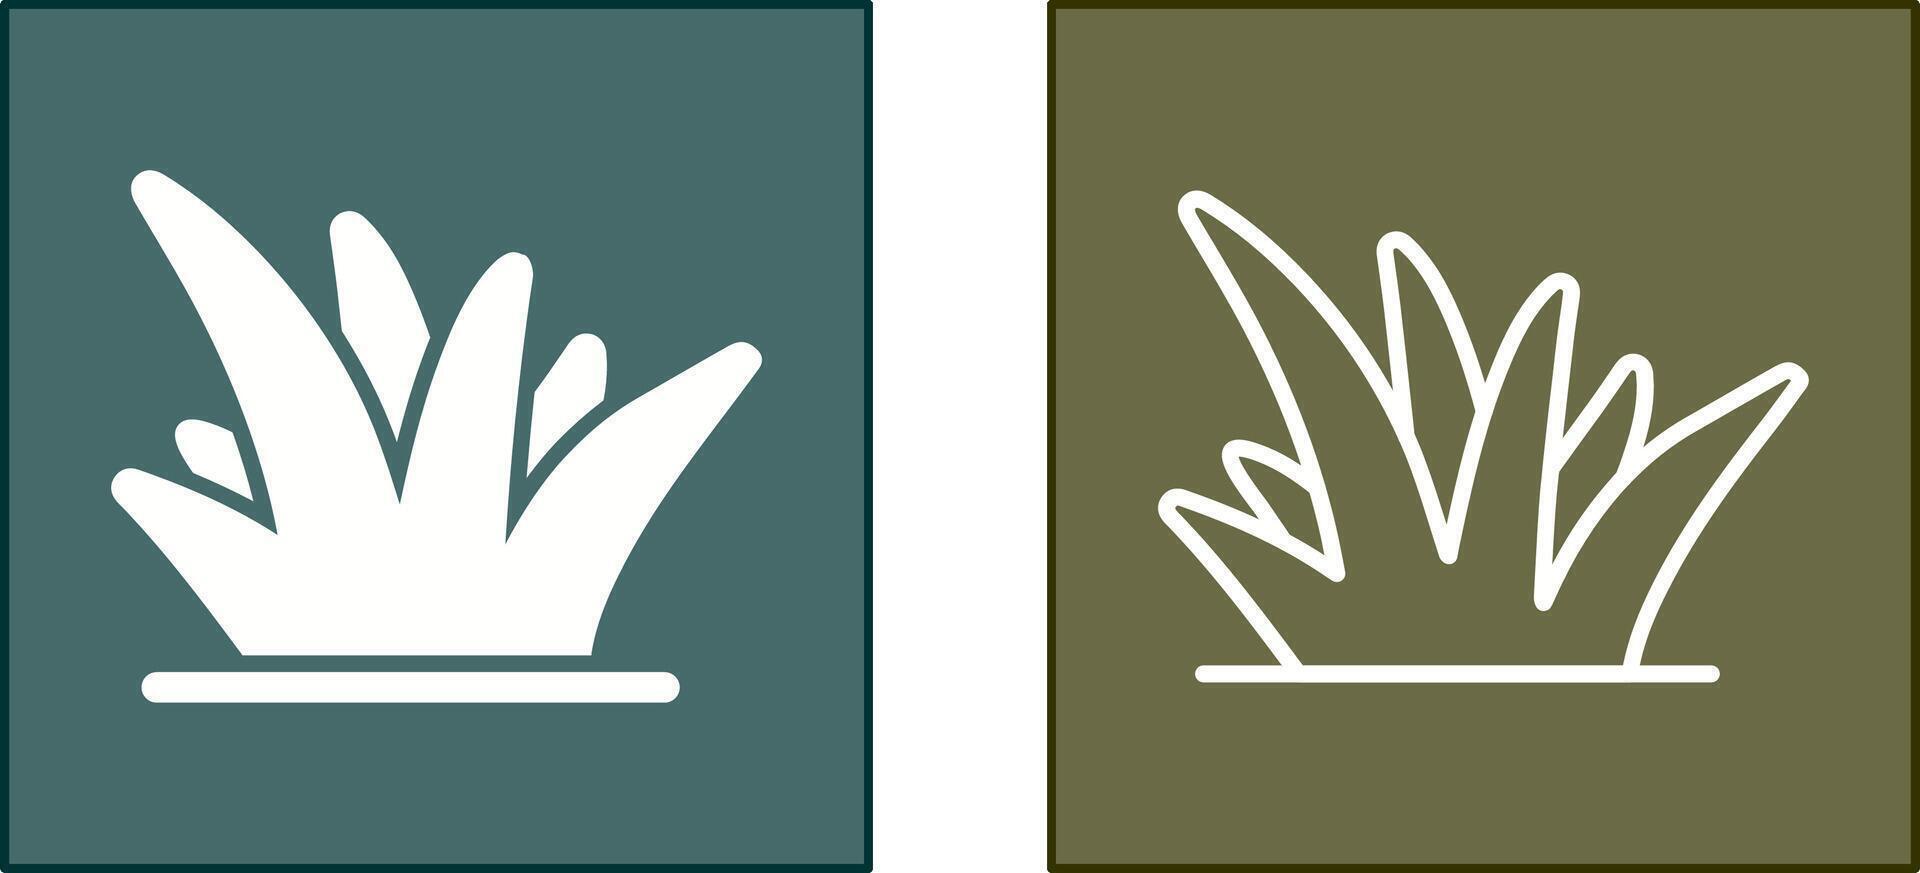 conception d'icône d'herbe vecteur